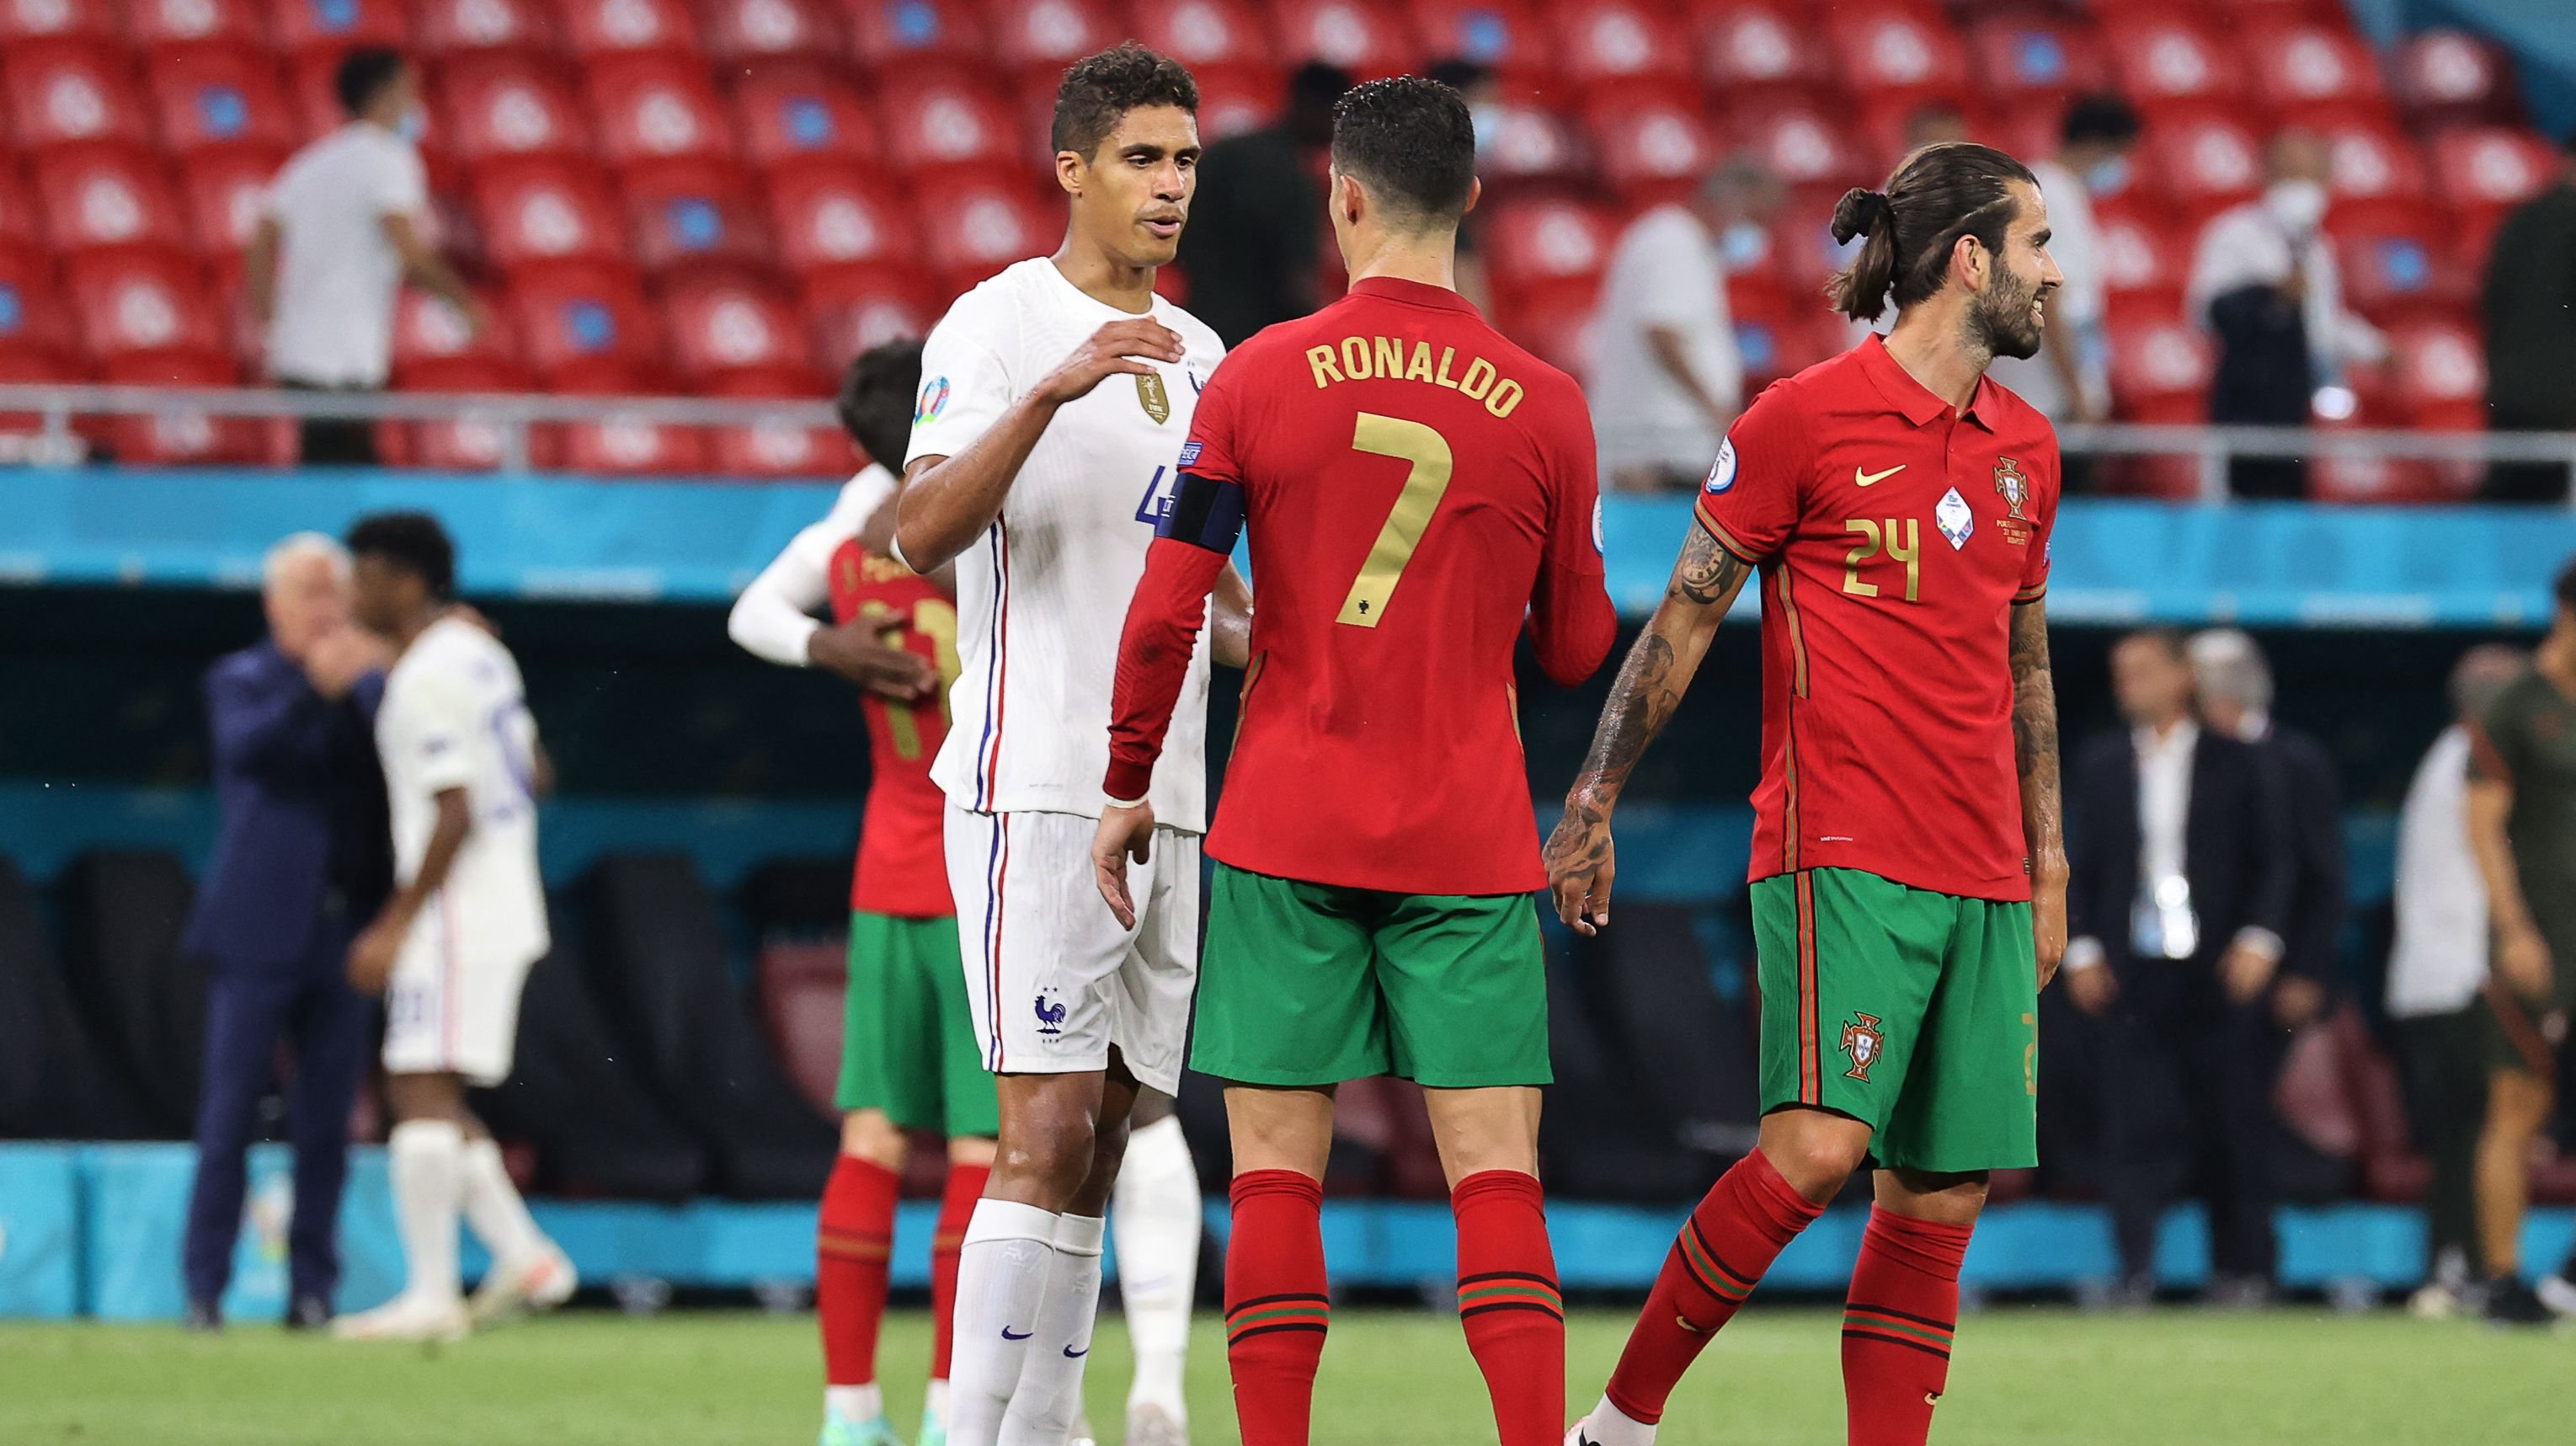 Portugal defronta Eslovénia em jogo de preparação para o Euro 2020 - CNN  Portugal